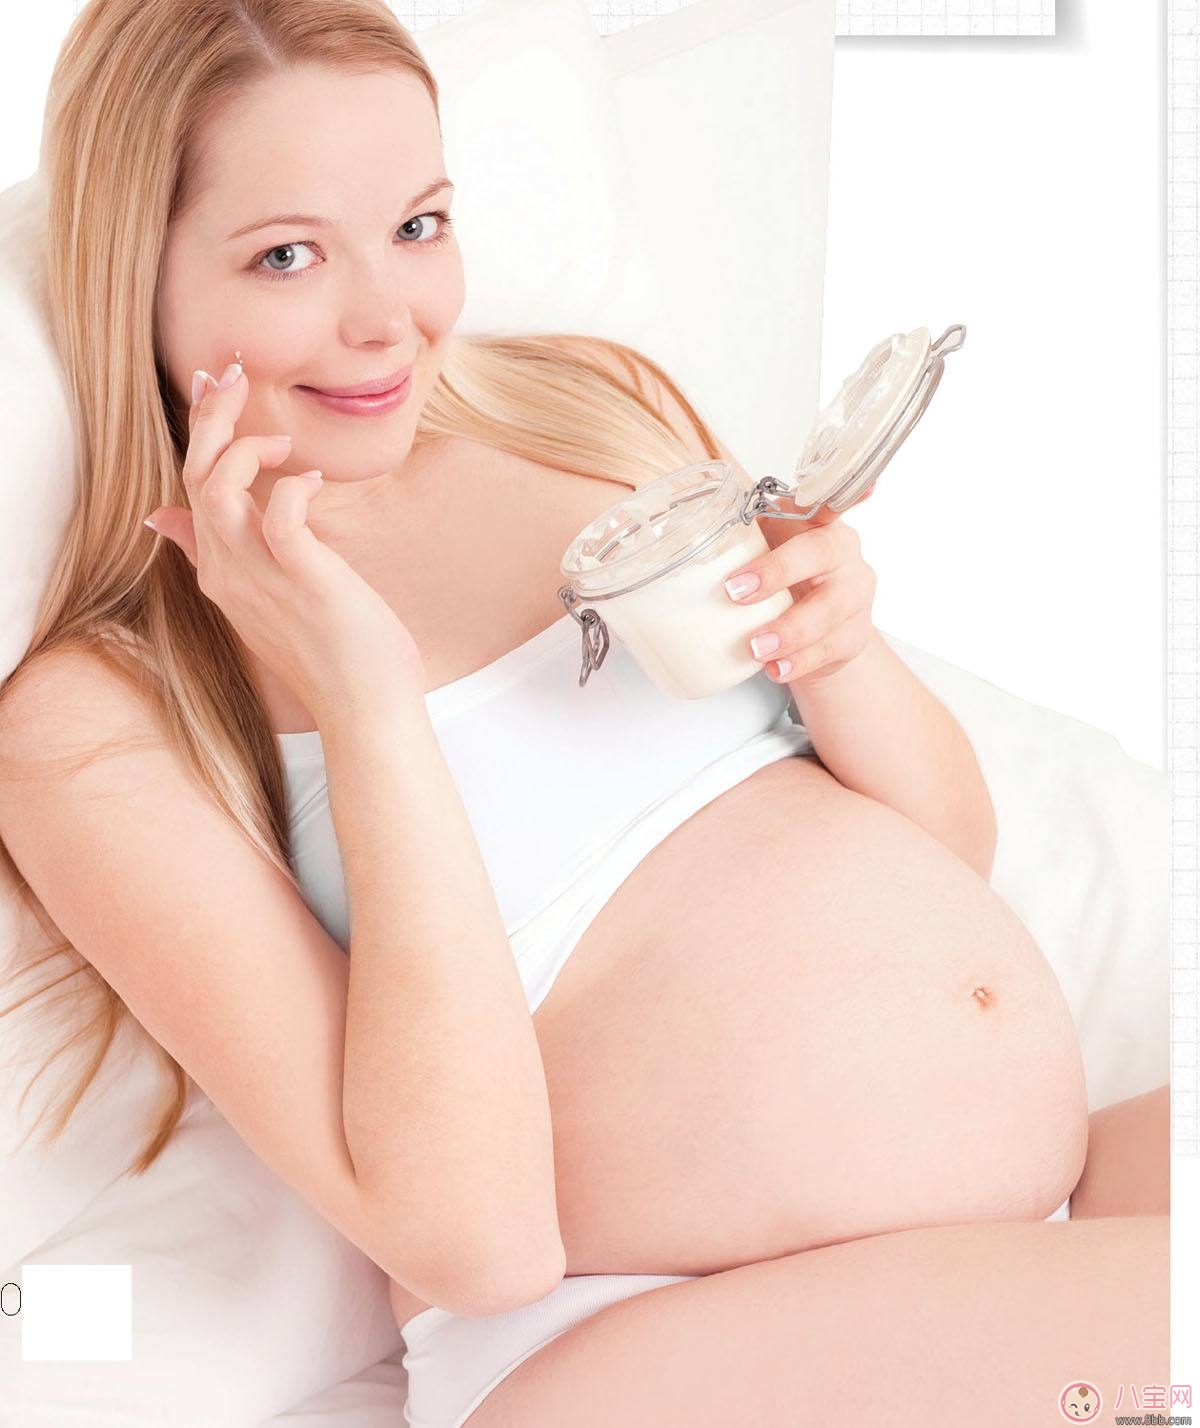 孕期皮肤爱出油怎么办？如何护理孕期油性肌肤？